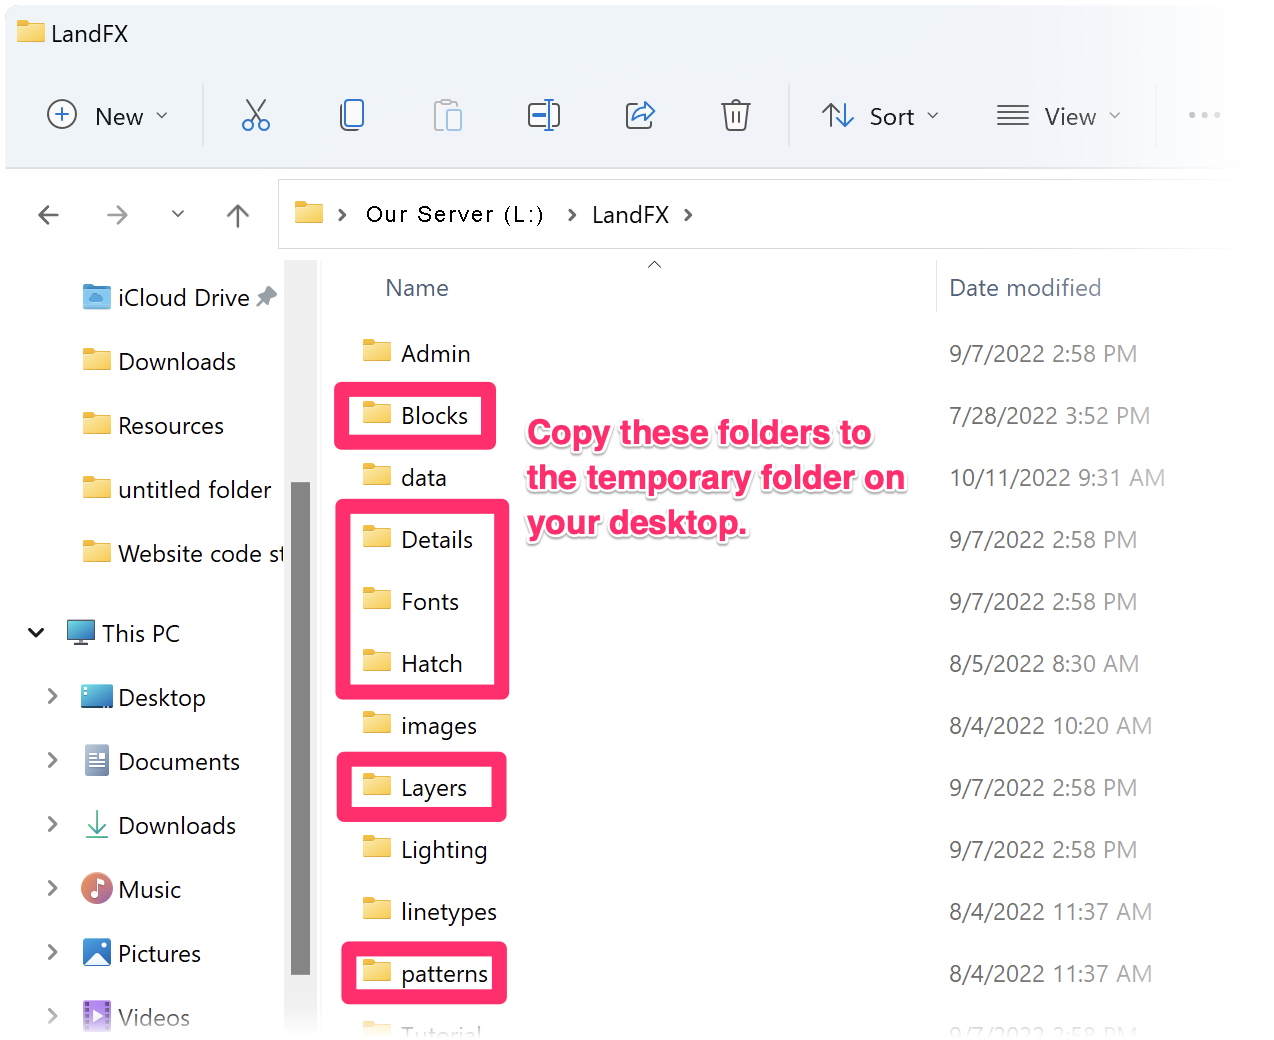 Subfolders within LandFX folder on office server